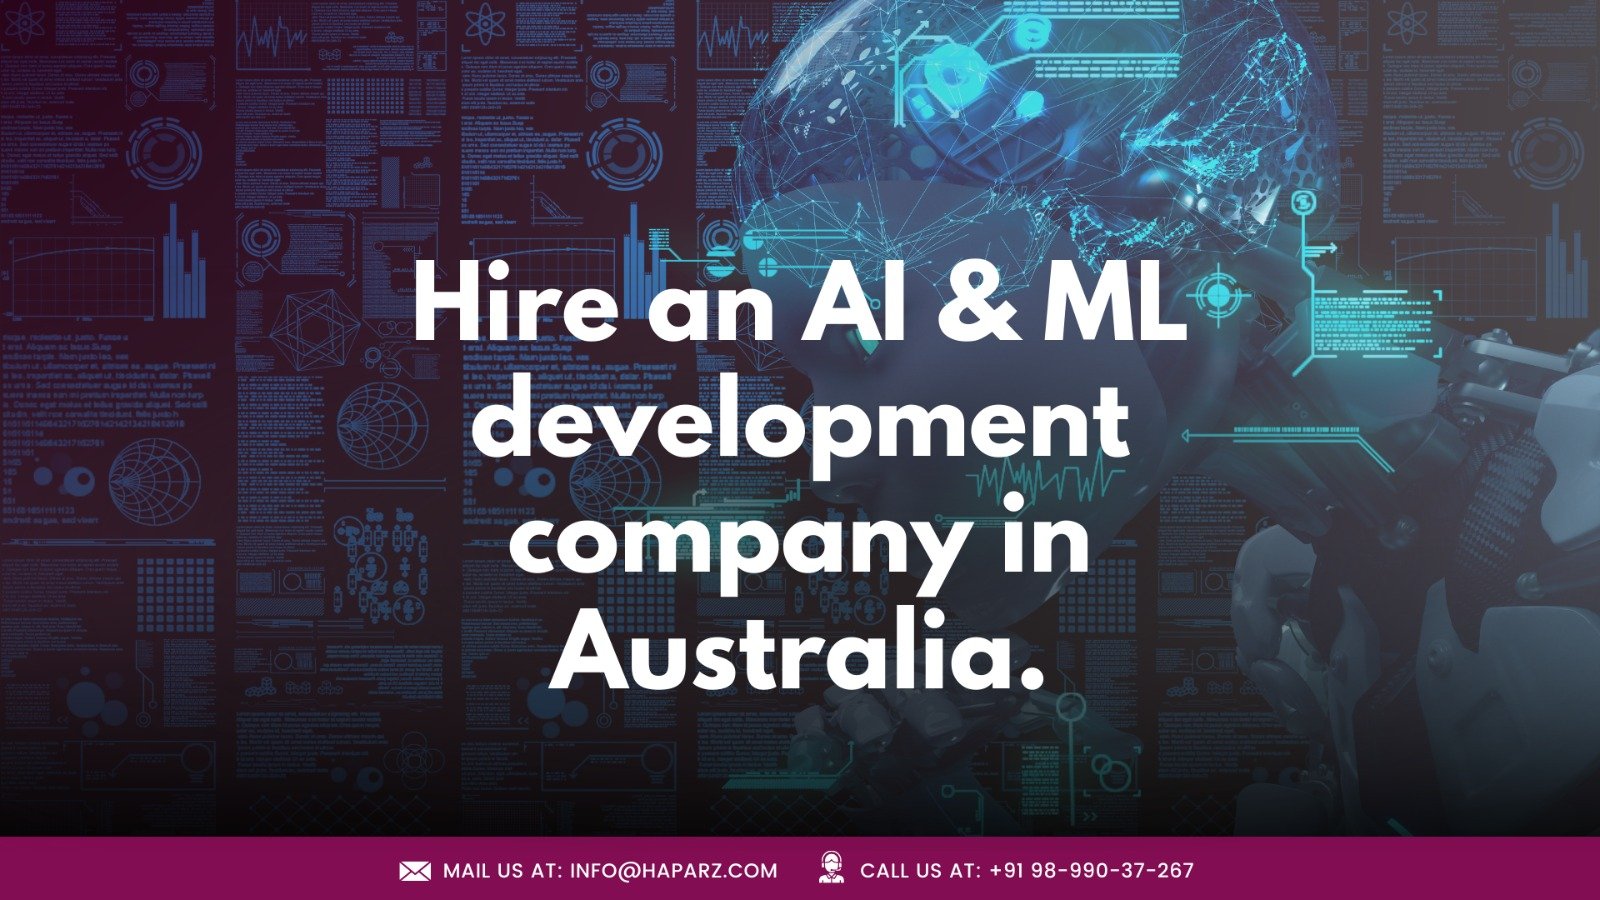 Hire an AI & ML development company in Australia.